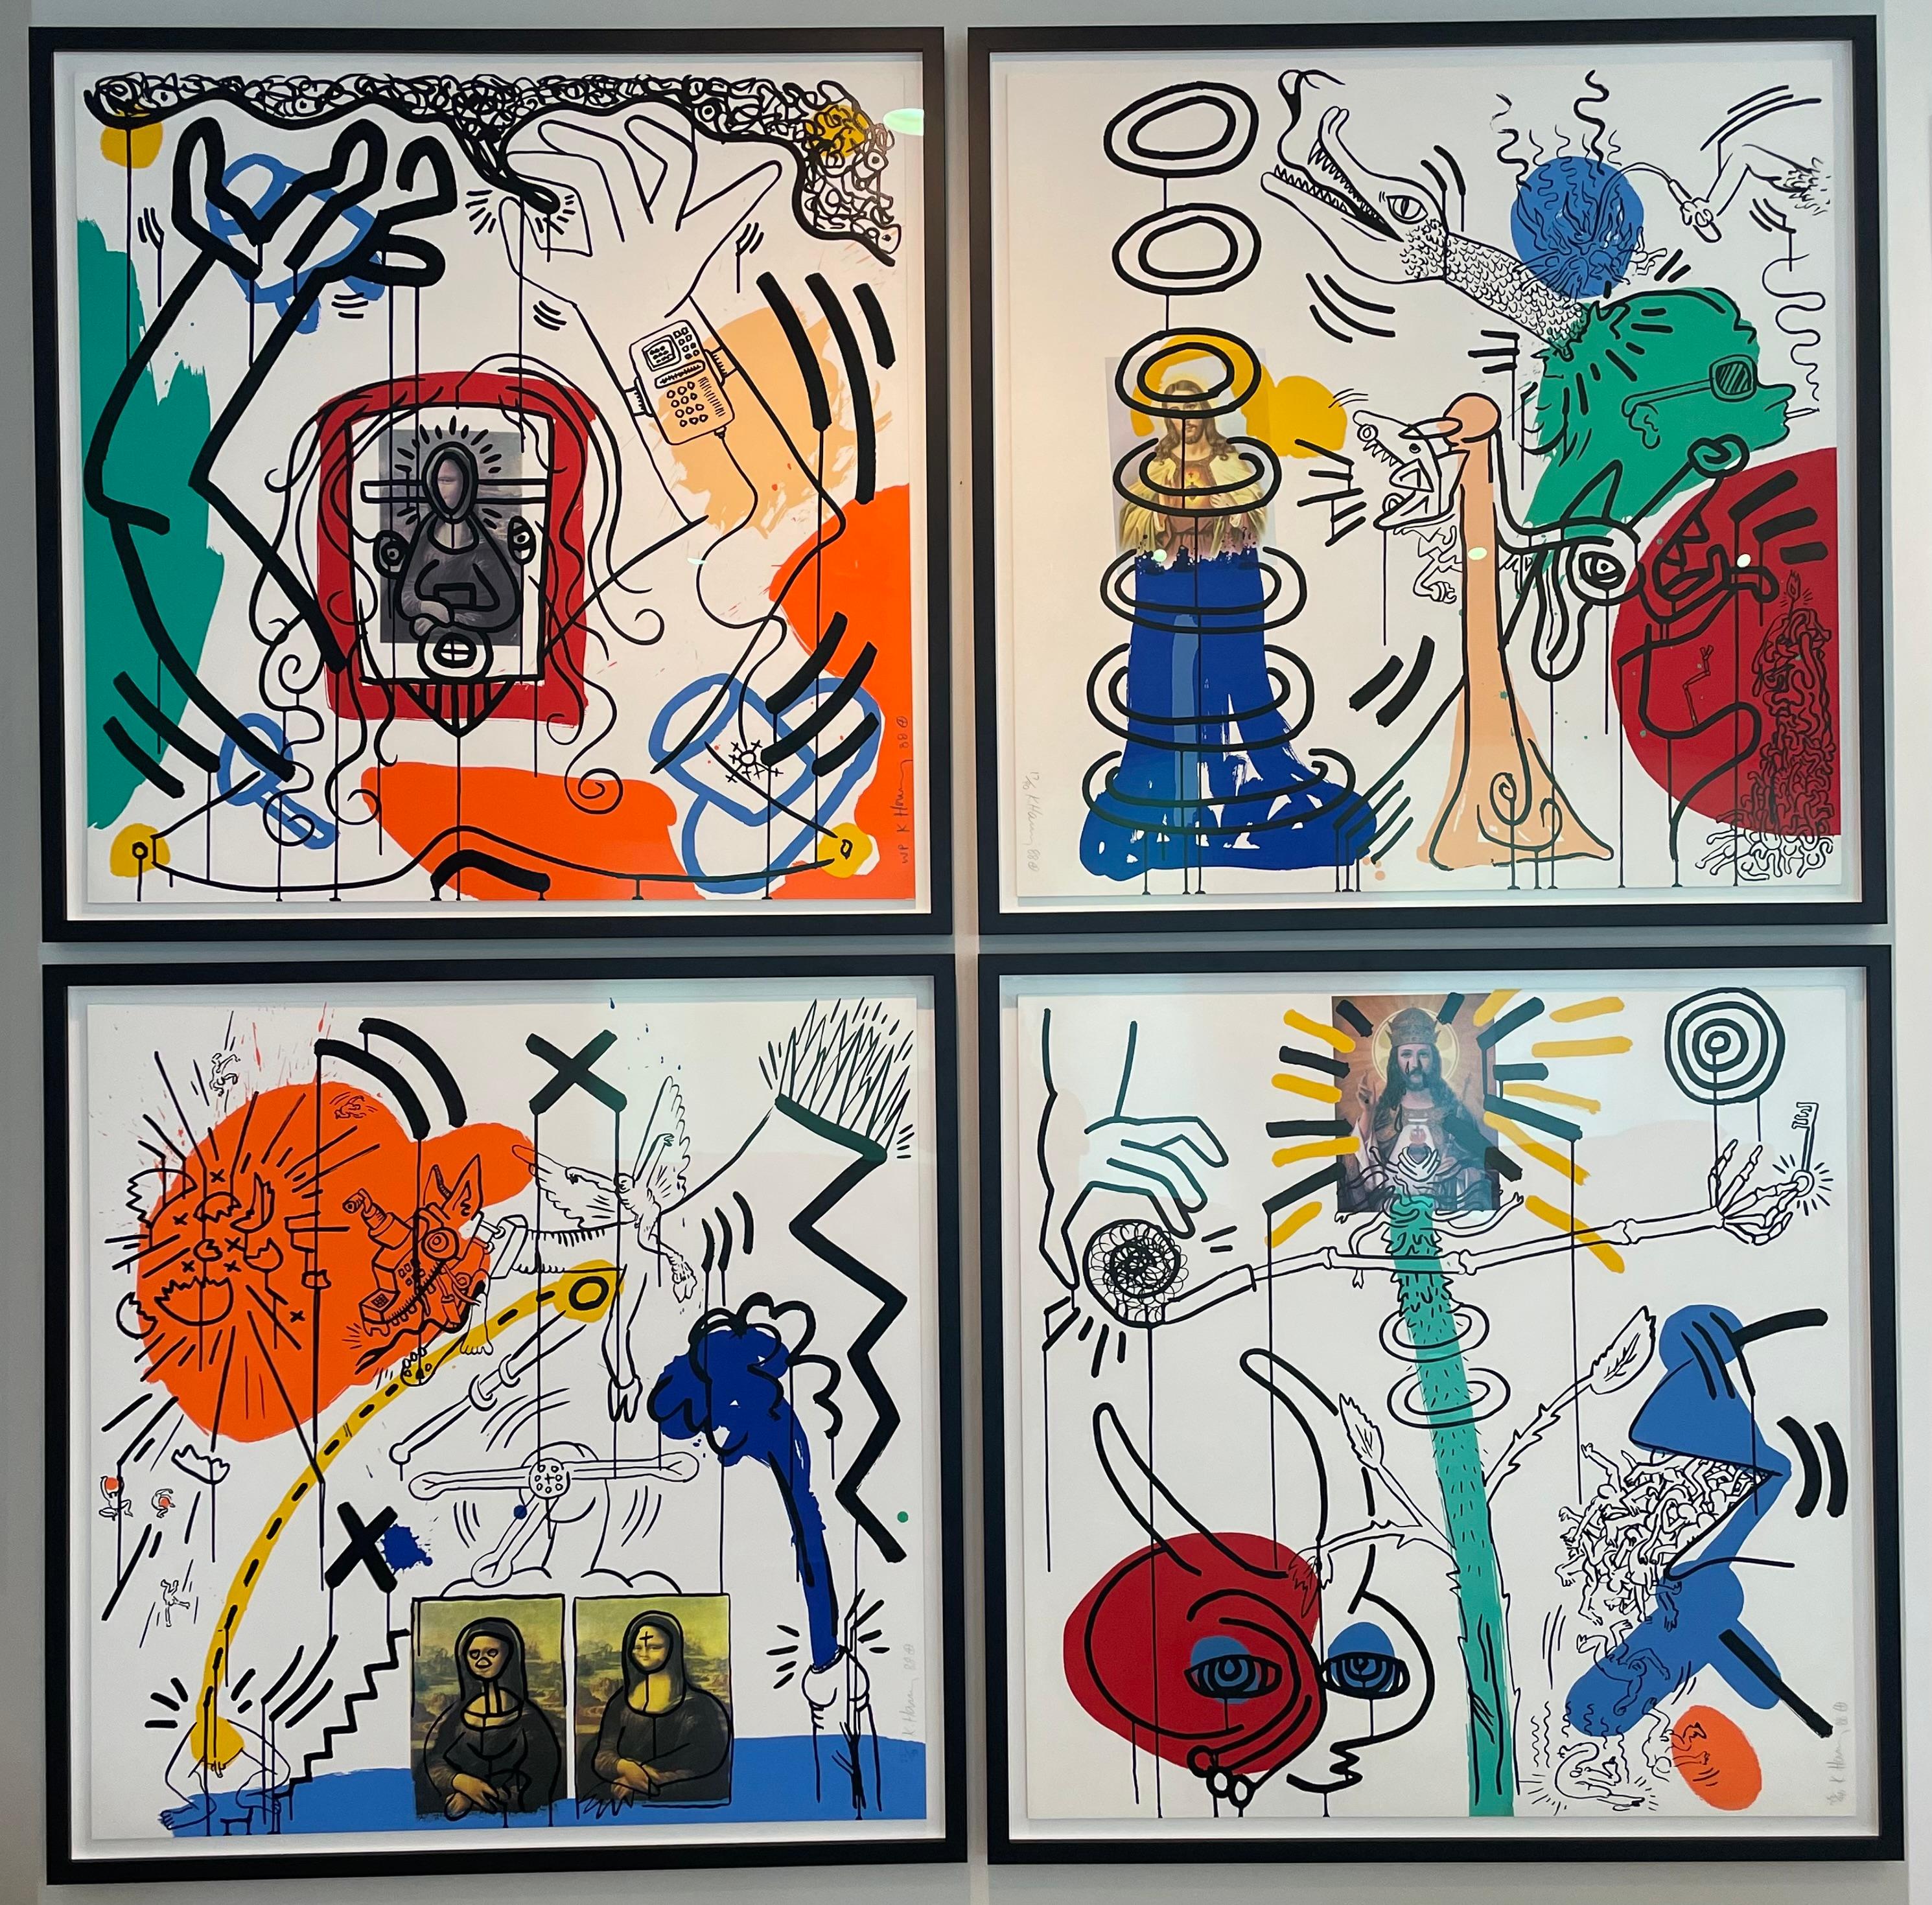 Jetzt kaufen mit ShopPay
Kaufen mit 
Mehr Zahlungsmöglichkeiten
Künstler: Keith Haring 
Titel: Apokalypse 6
Größe:  38 × 38 in  96.5 × 96.5 cm
Medium: Farbsiebdruck auf Lenox Museum Board
Auflage: WP (Working Proof) von 90
Jahr: 1988
Anmerkungen: